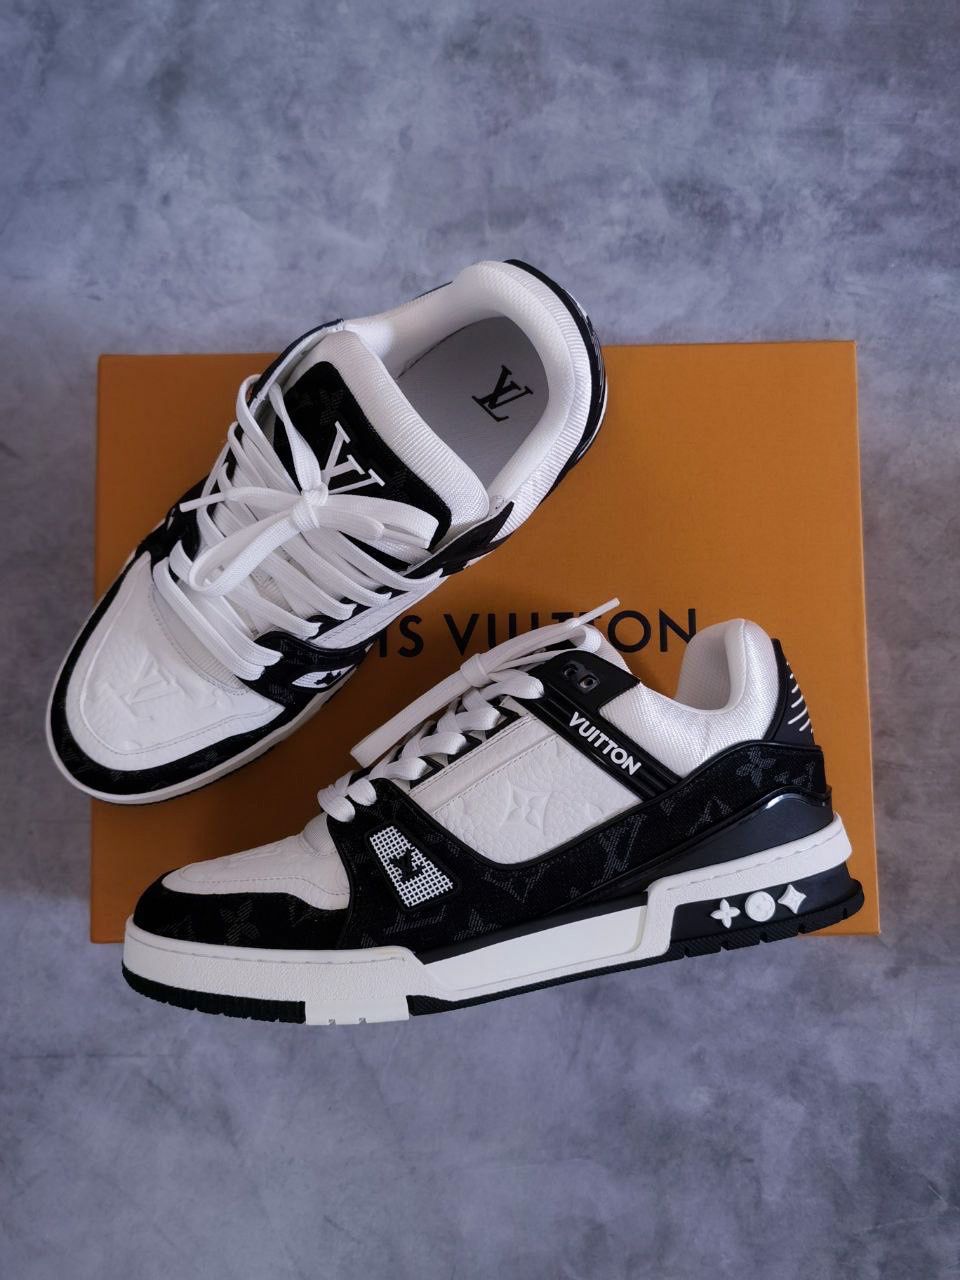 Louis Vuitton LV Trainer Sneaker BLACK. Size 09.5